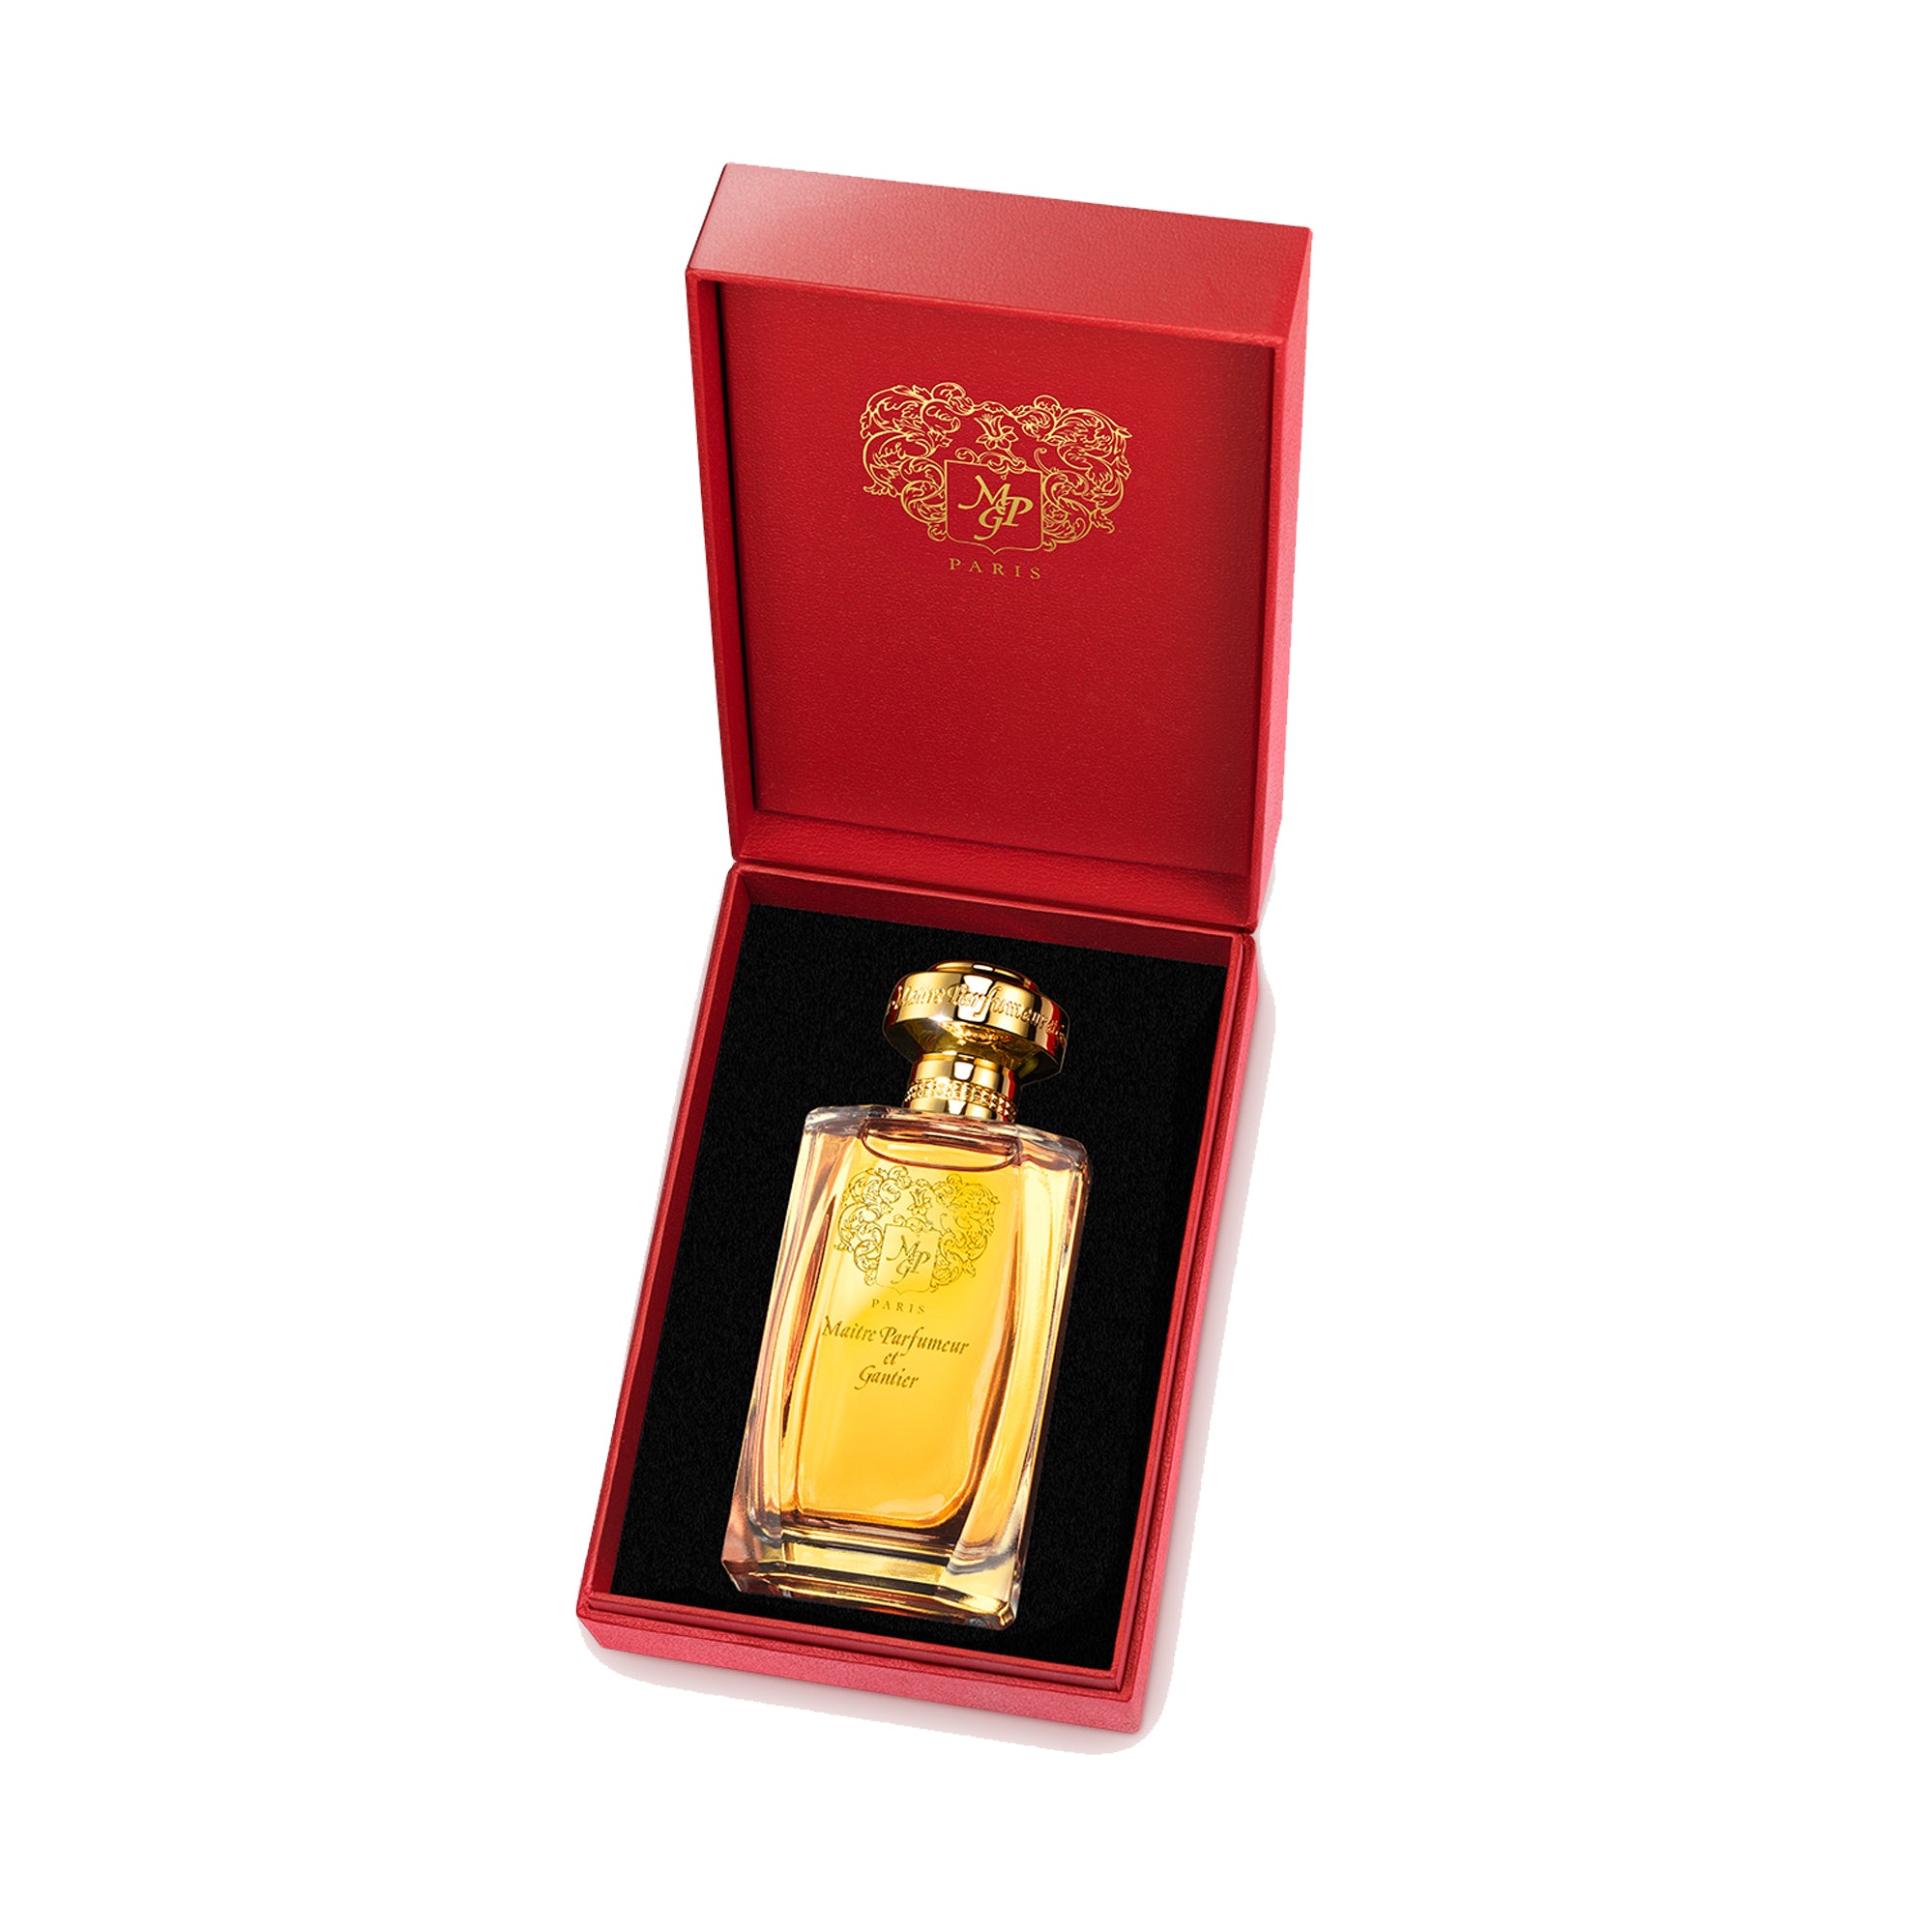 Ambre Précieux Eau de Parfum 120ml by MAÎTRE PARFUMEUR ET GANTIER in Presentation Box